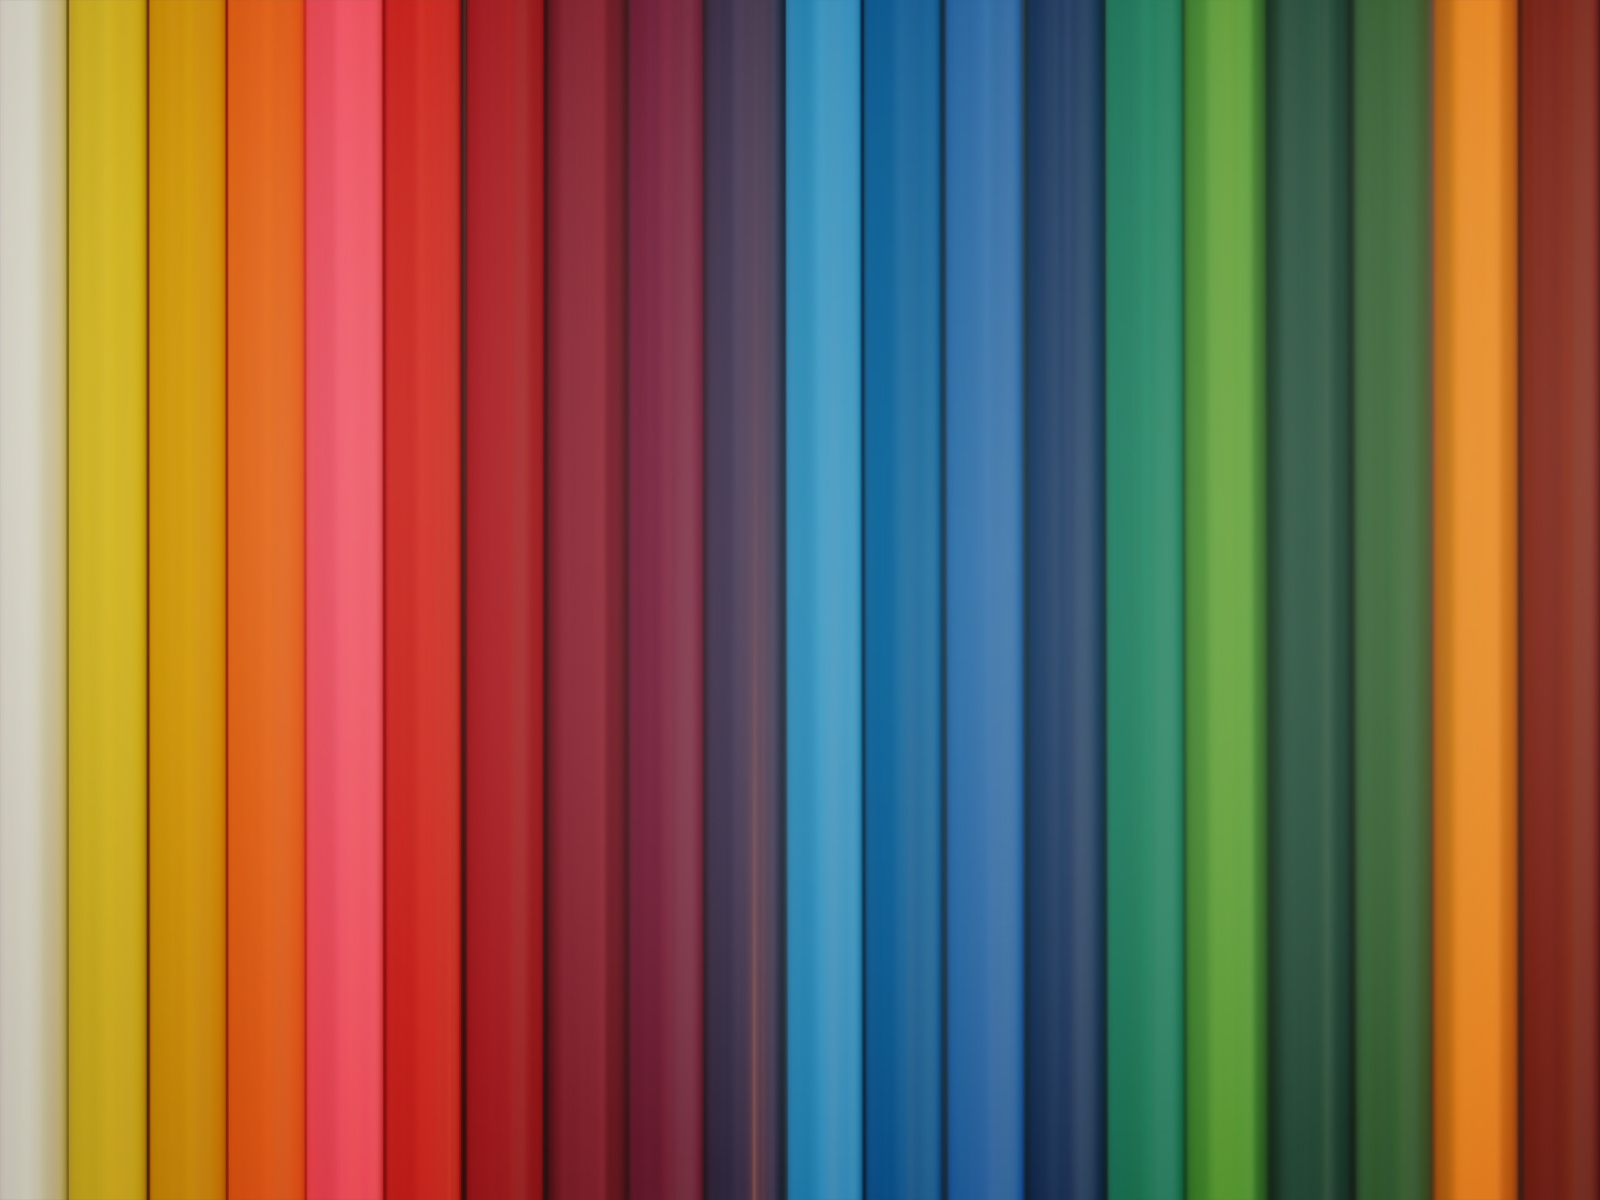 tapete de colores,blau,orange,linie,gelb,muster